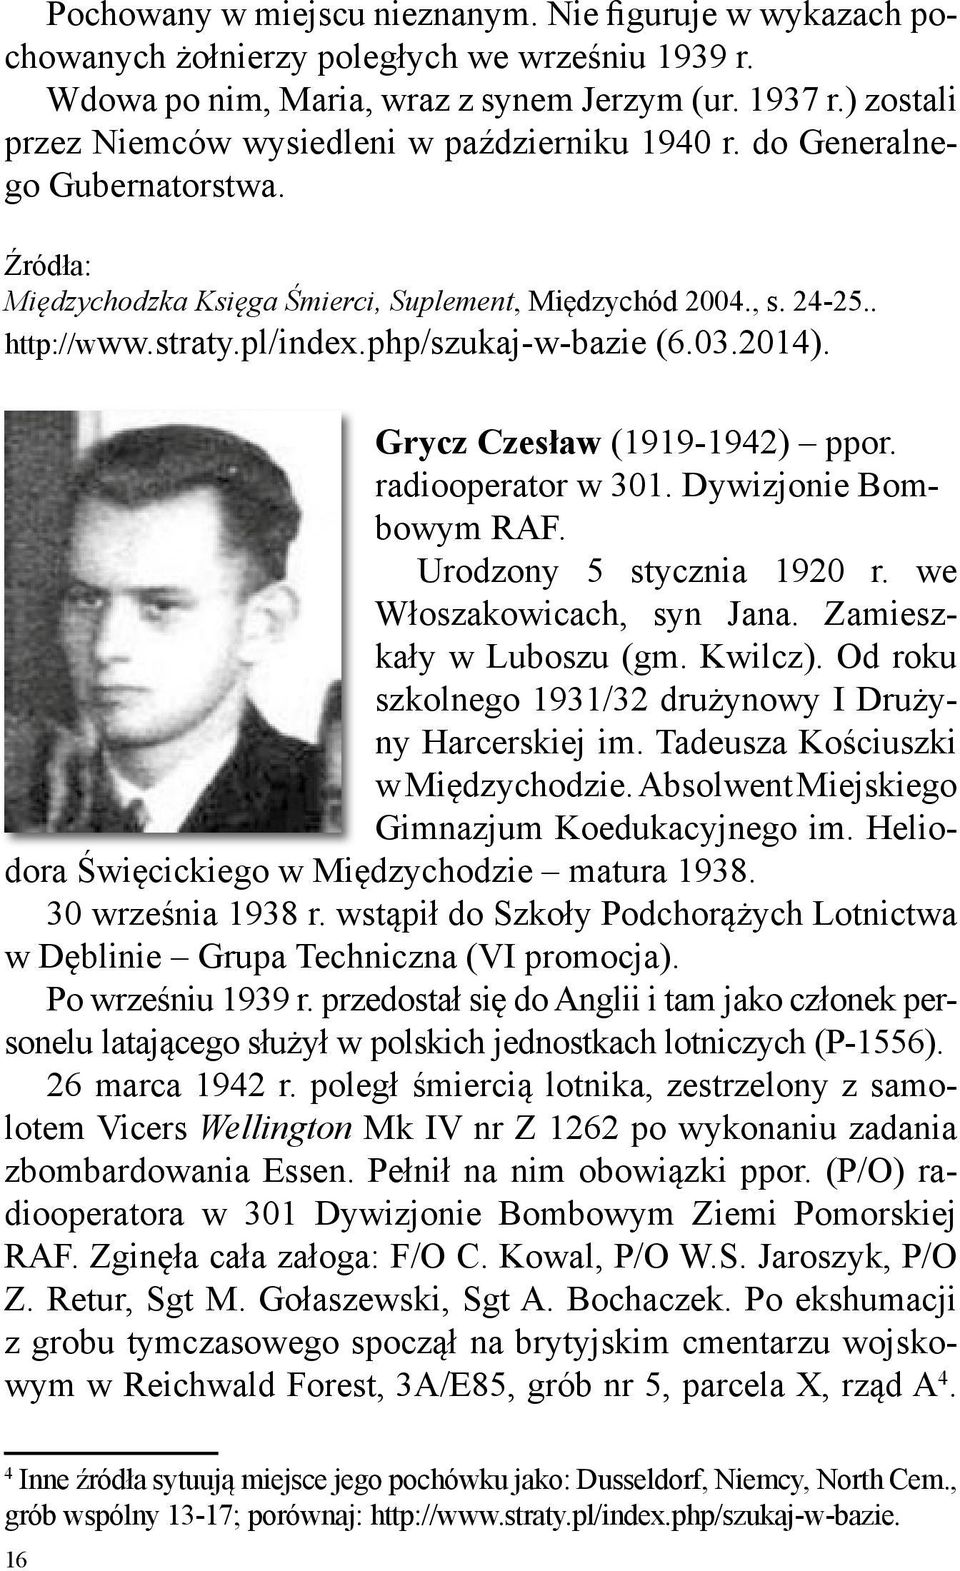 php/szukaj-w-bazie (6.03.2014). Grycz Czesław (1919-1942) ppor. radiooperator w 301. Dywizjonie Bombowym RAF. Urodzony 5 stycznia 1920 r. we Włoszakowicach, syn Jana. Zamieszkały w Luboszu (gm.